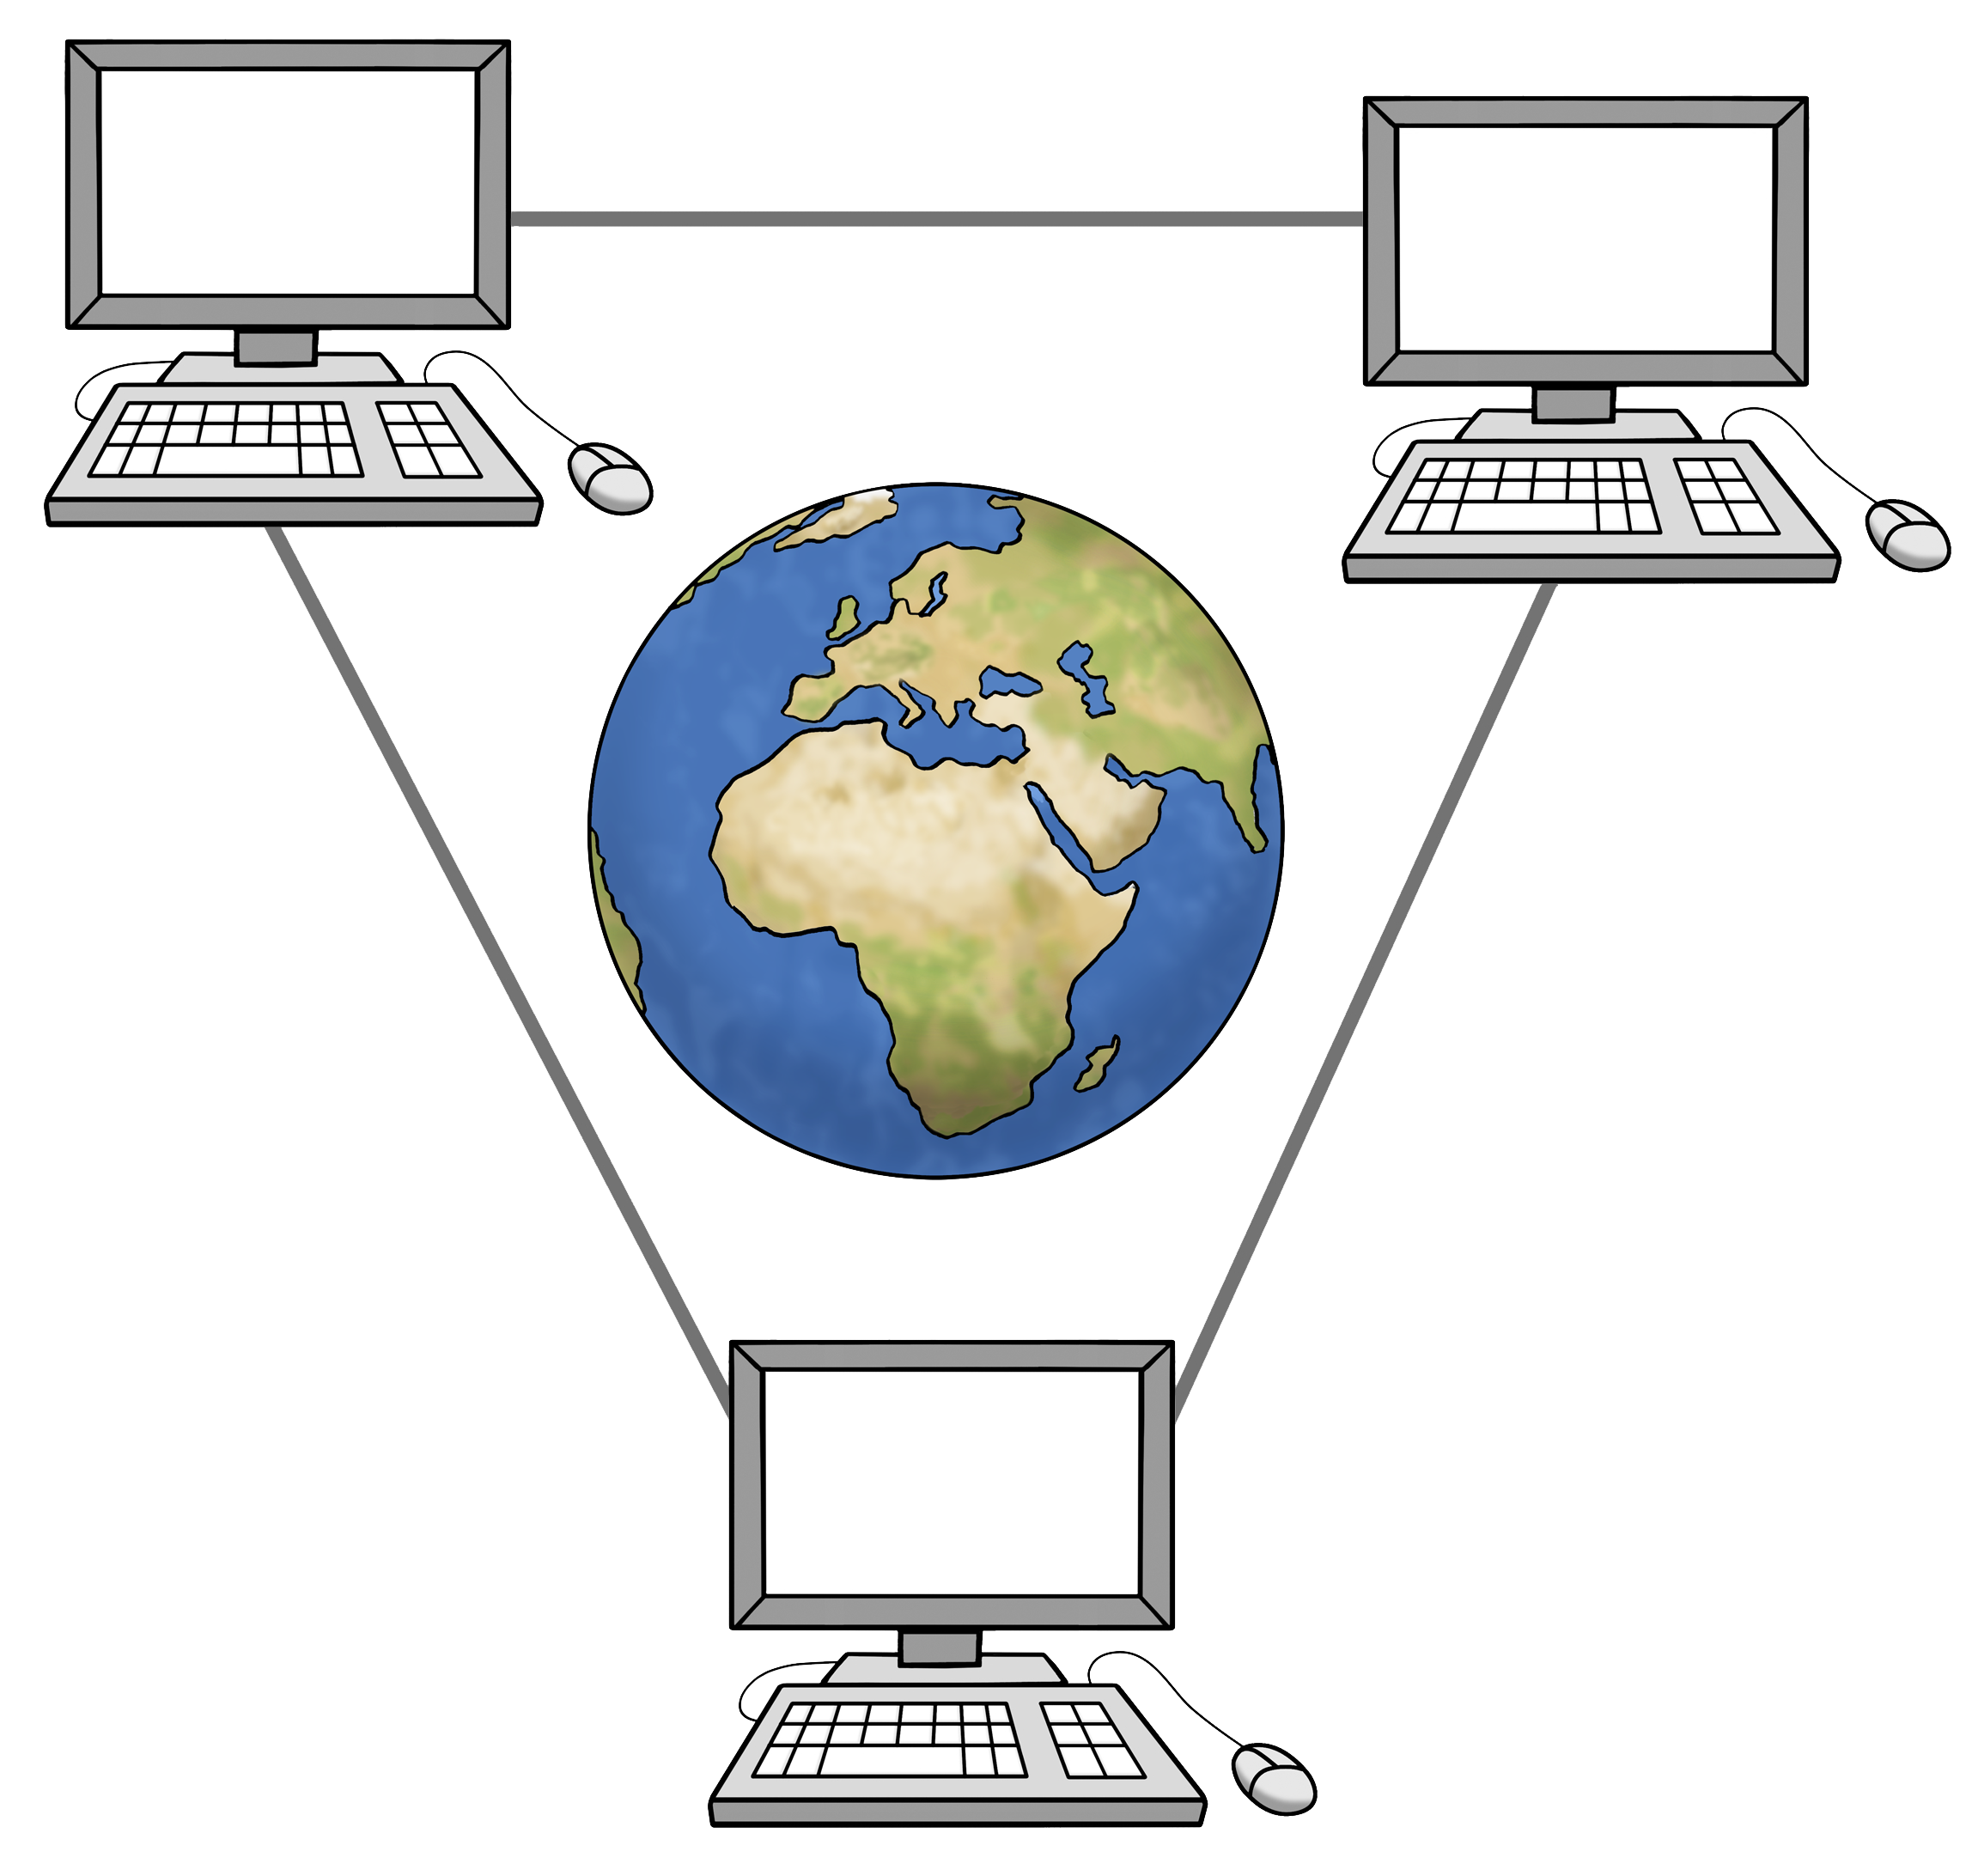 Gezeichnetes Bild mehrerer vernetzter Computer